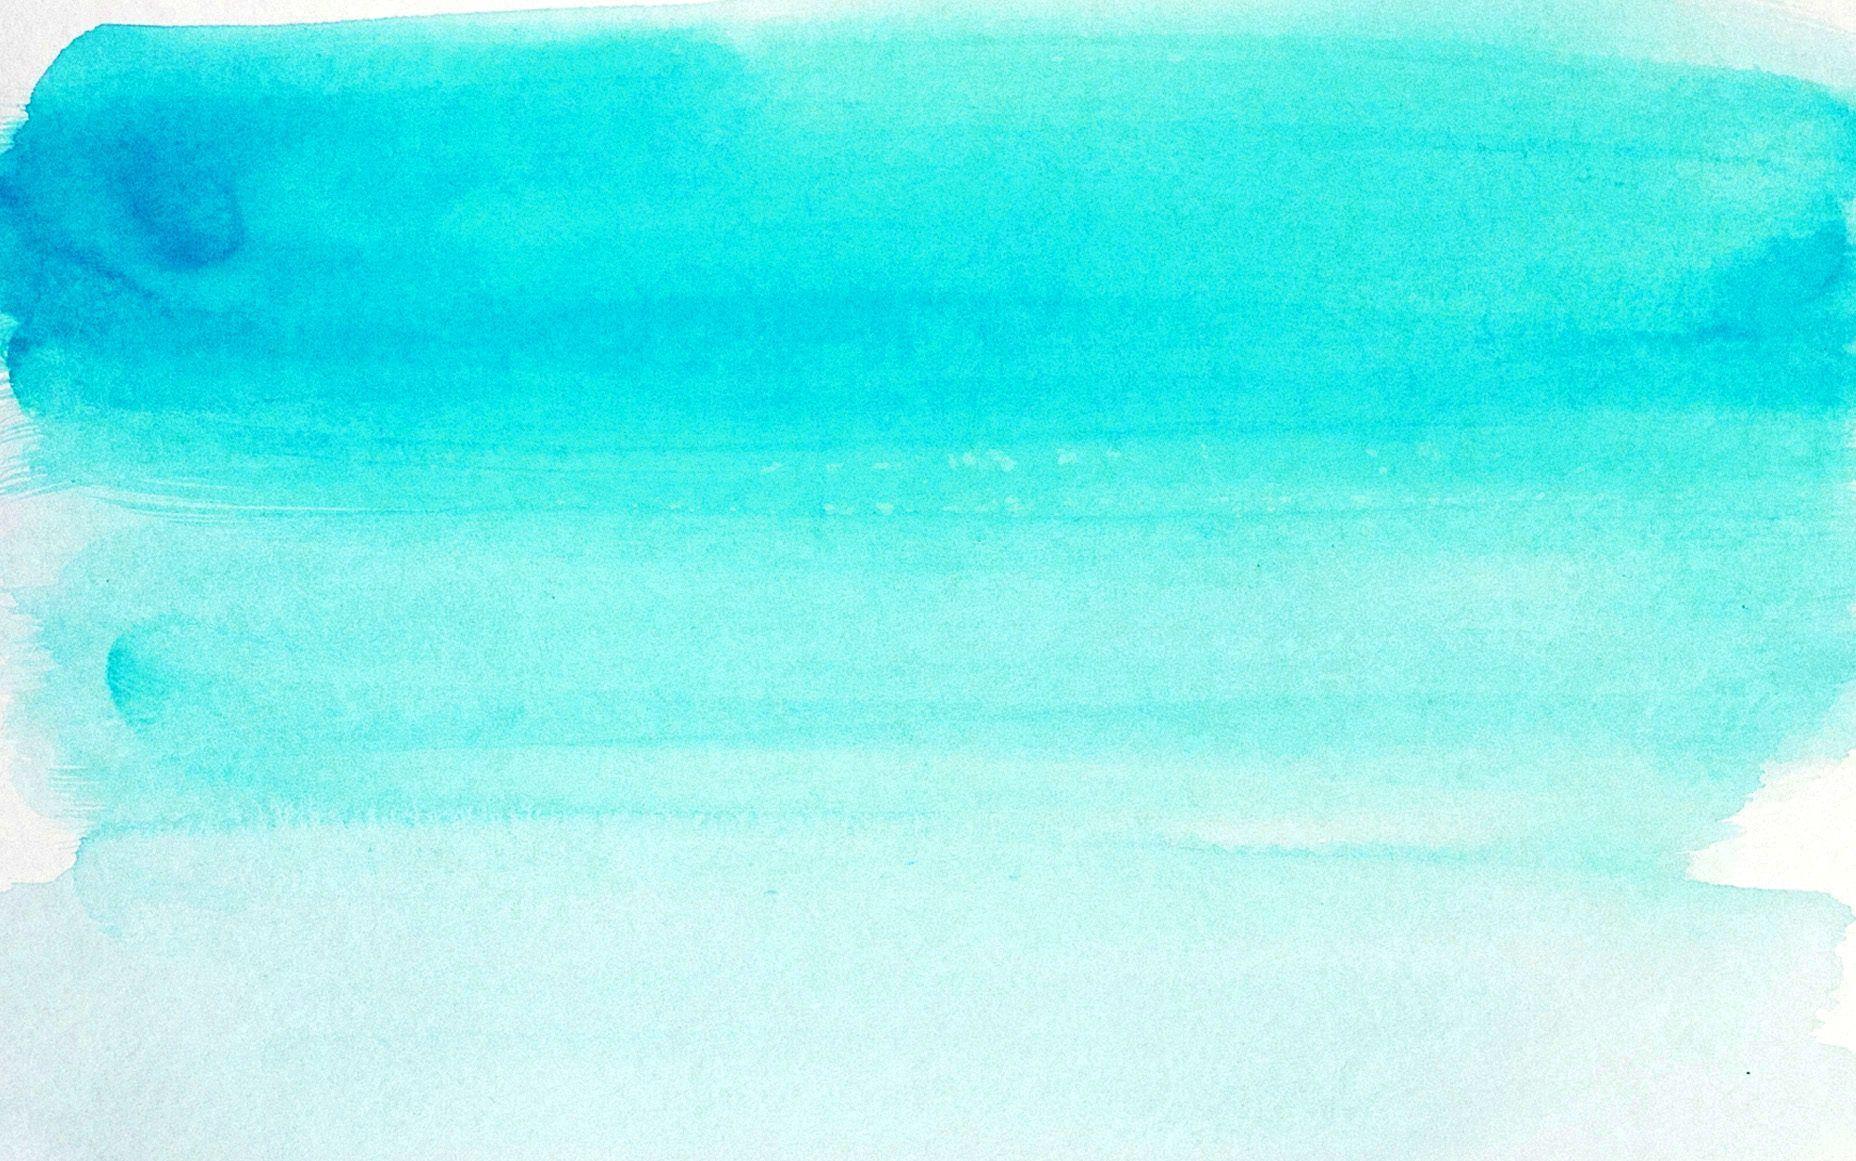 1856x1161 Màu nước xanh dễ thương Nền - 1856x1161 Hình nền